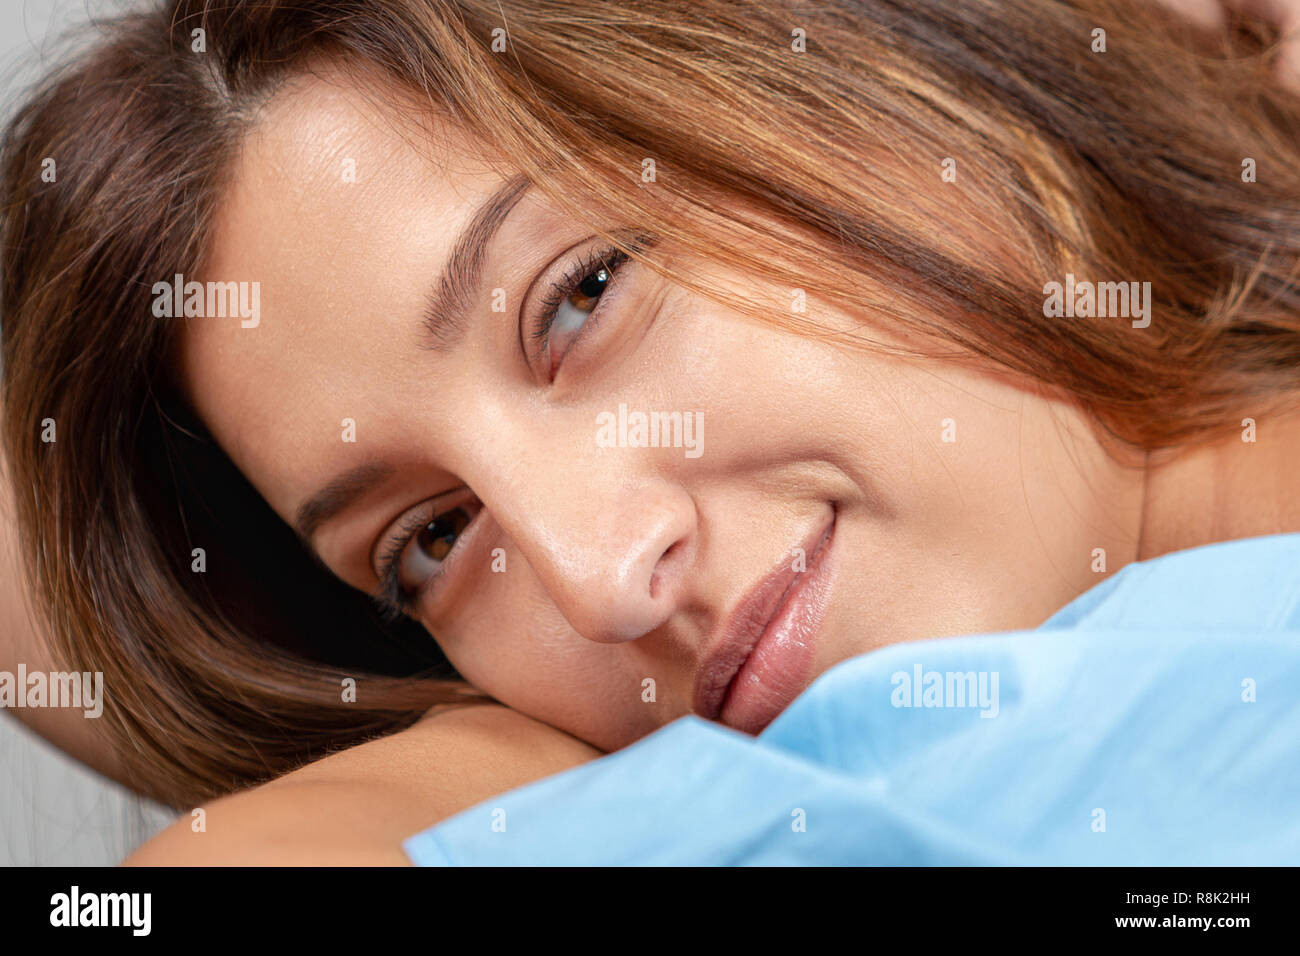 Sorriso. Ritratto di una giovane e bella donna. Volto femminile close up Foto Stock